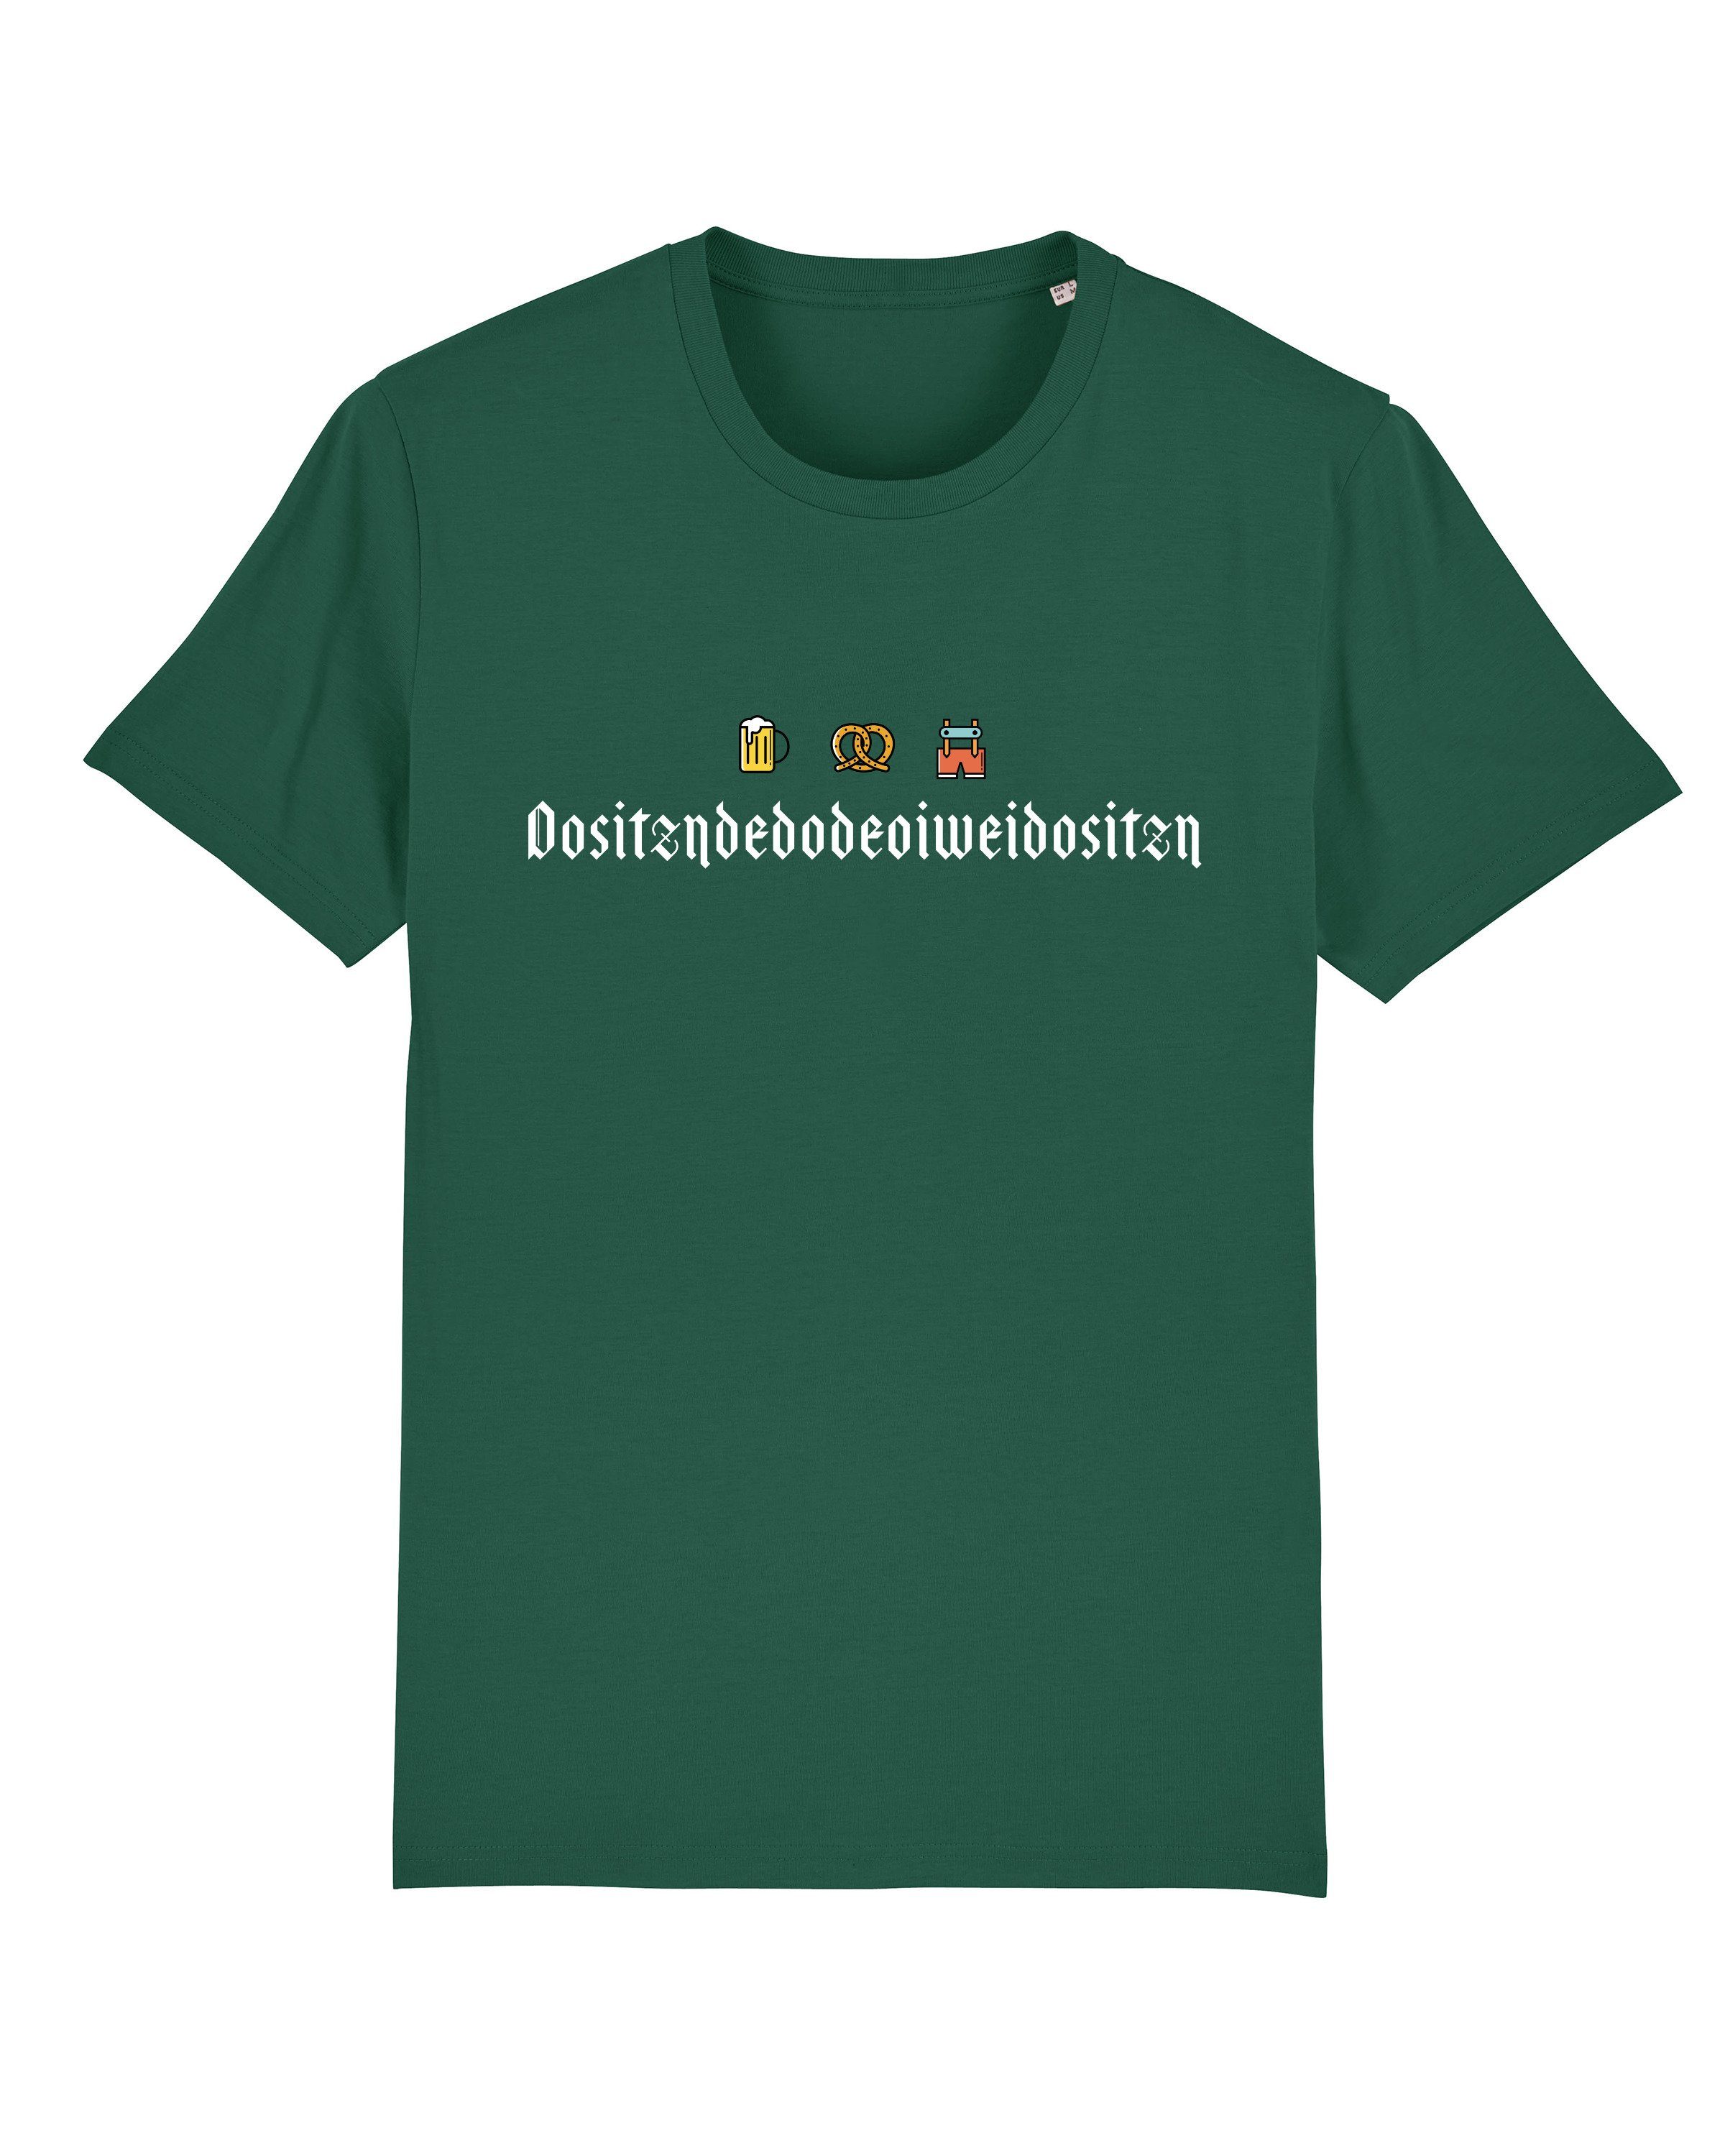 flaschengrün Print-Shirt Apparel Dositzndedodeoiweidositzn (1-tlg) wat?